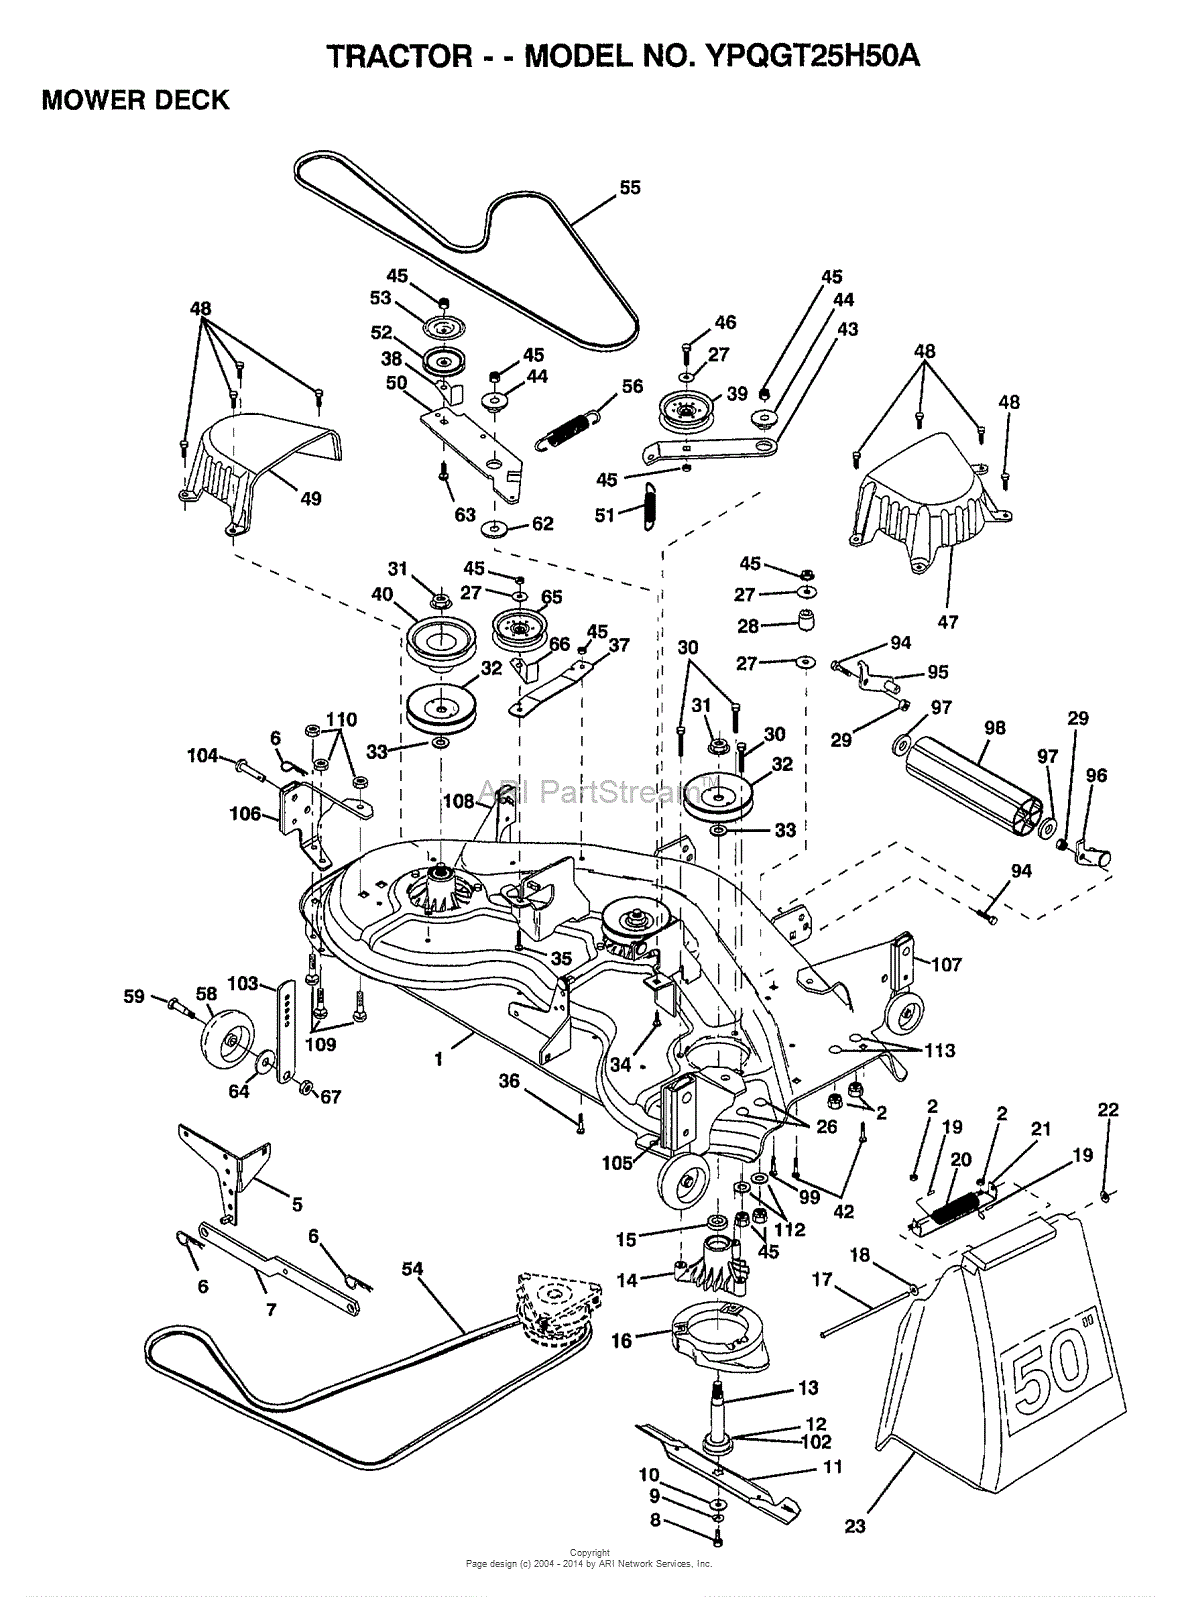 27 Craftsman 50 Inch Mower Deck Belt Diagram - Wiring Diagram Ideas